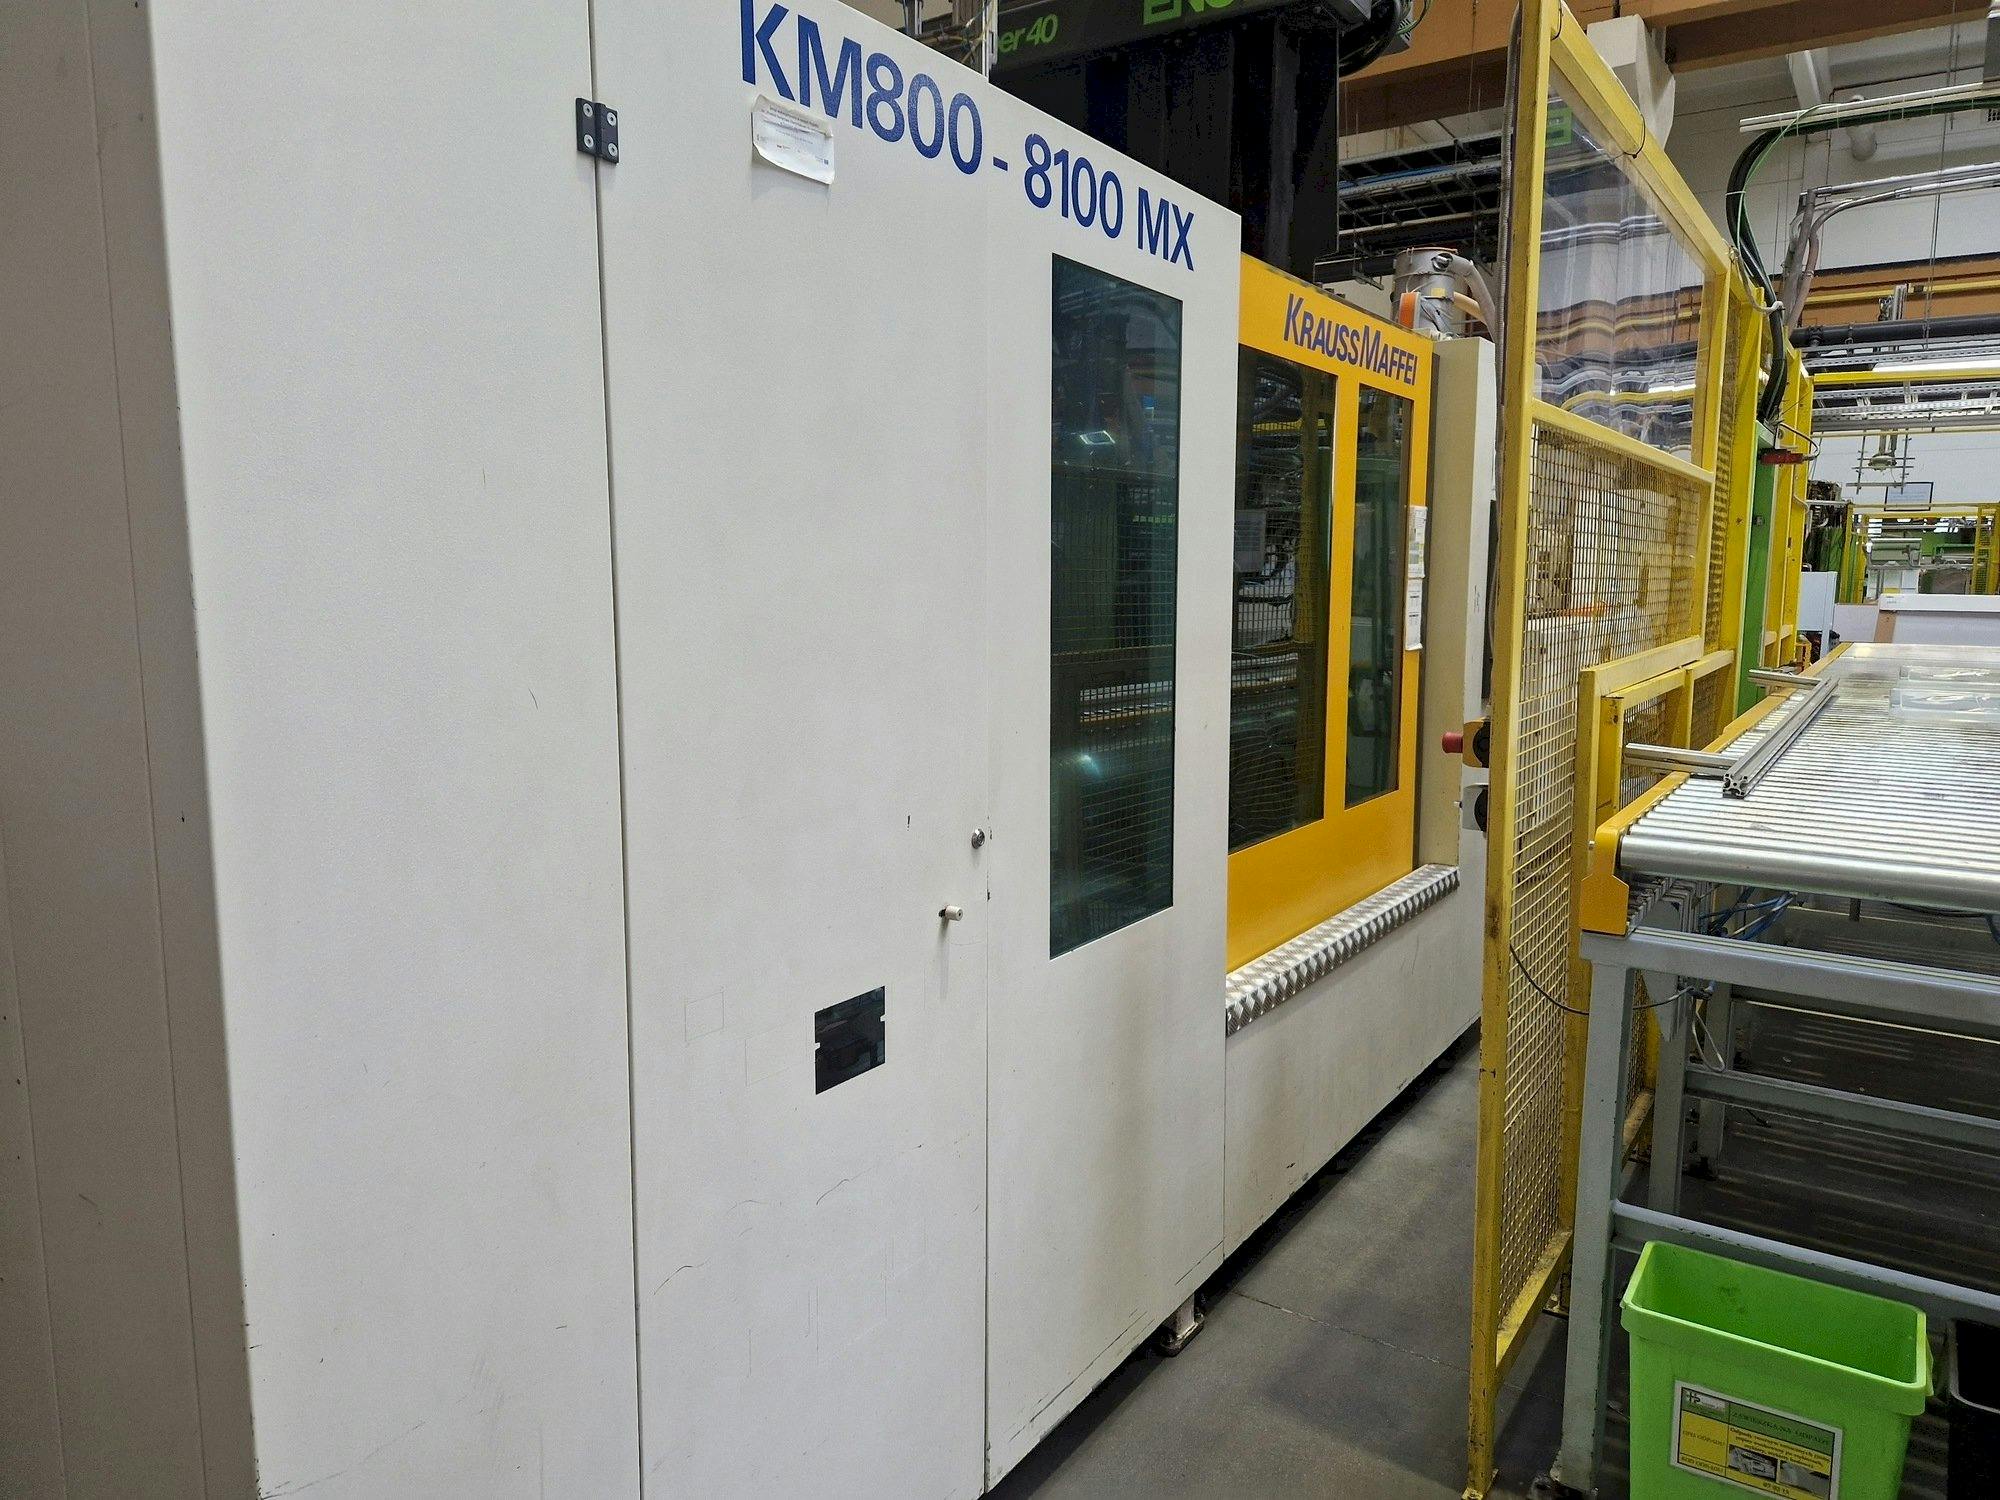 Widok lewej strony maszyny Krauss Maffei 800-8100 MX